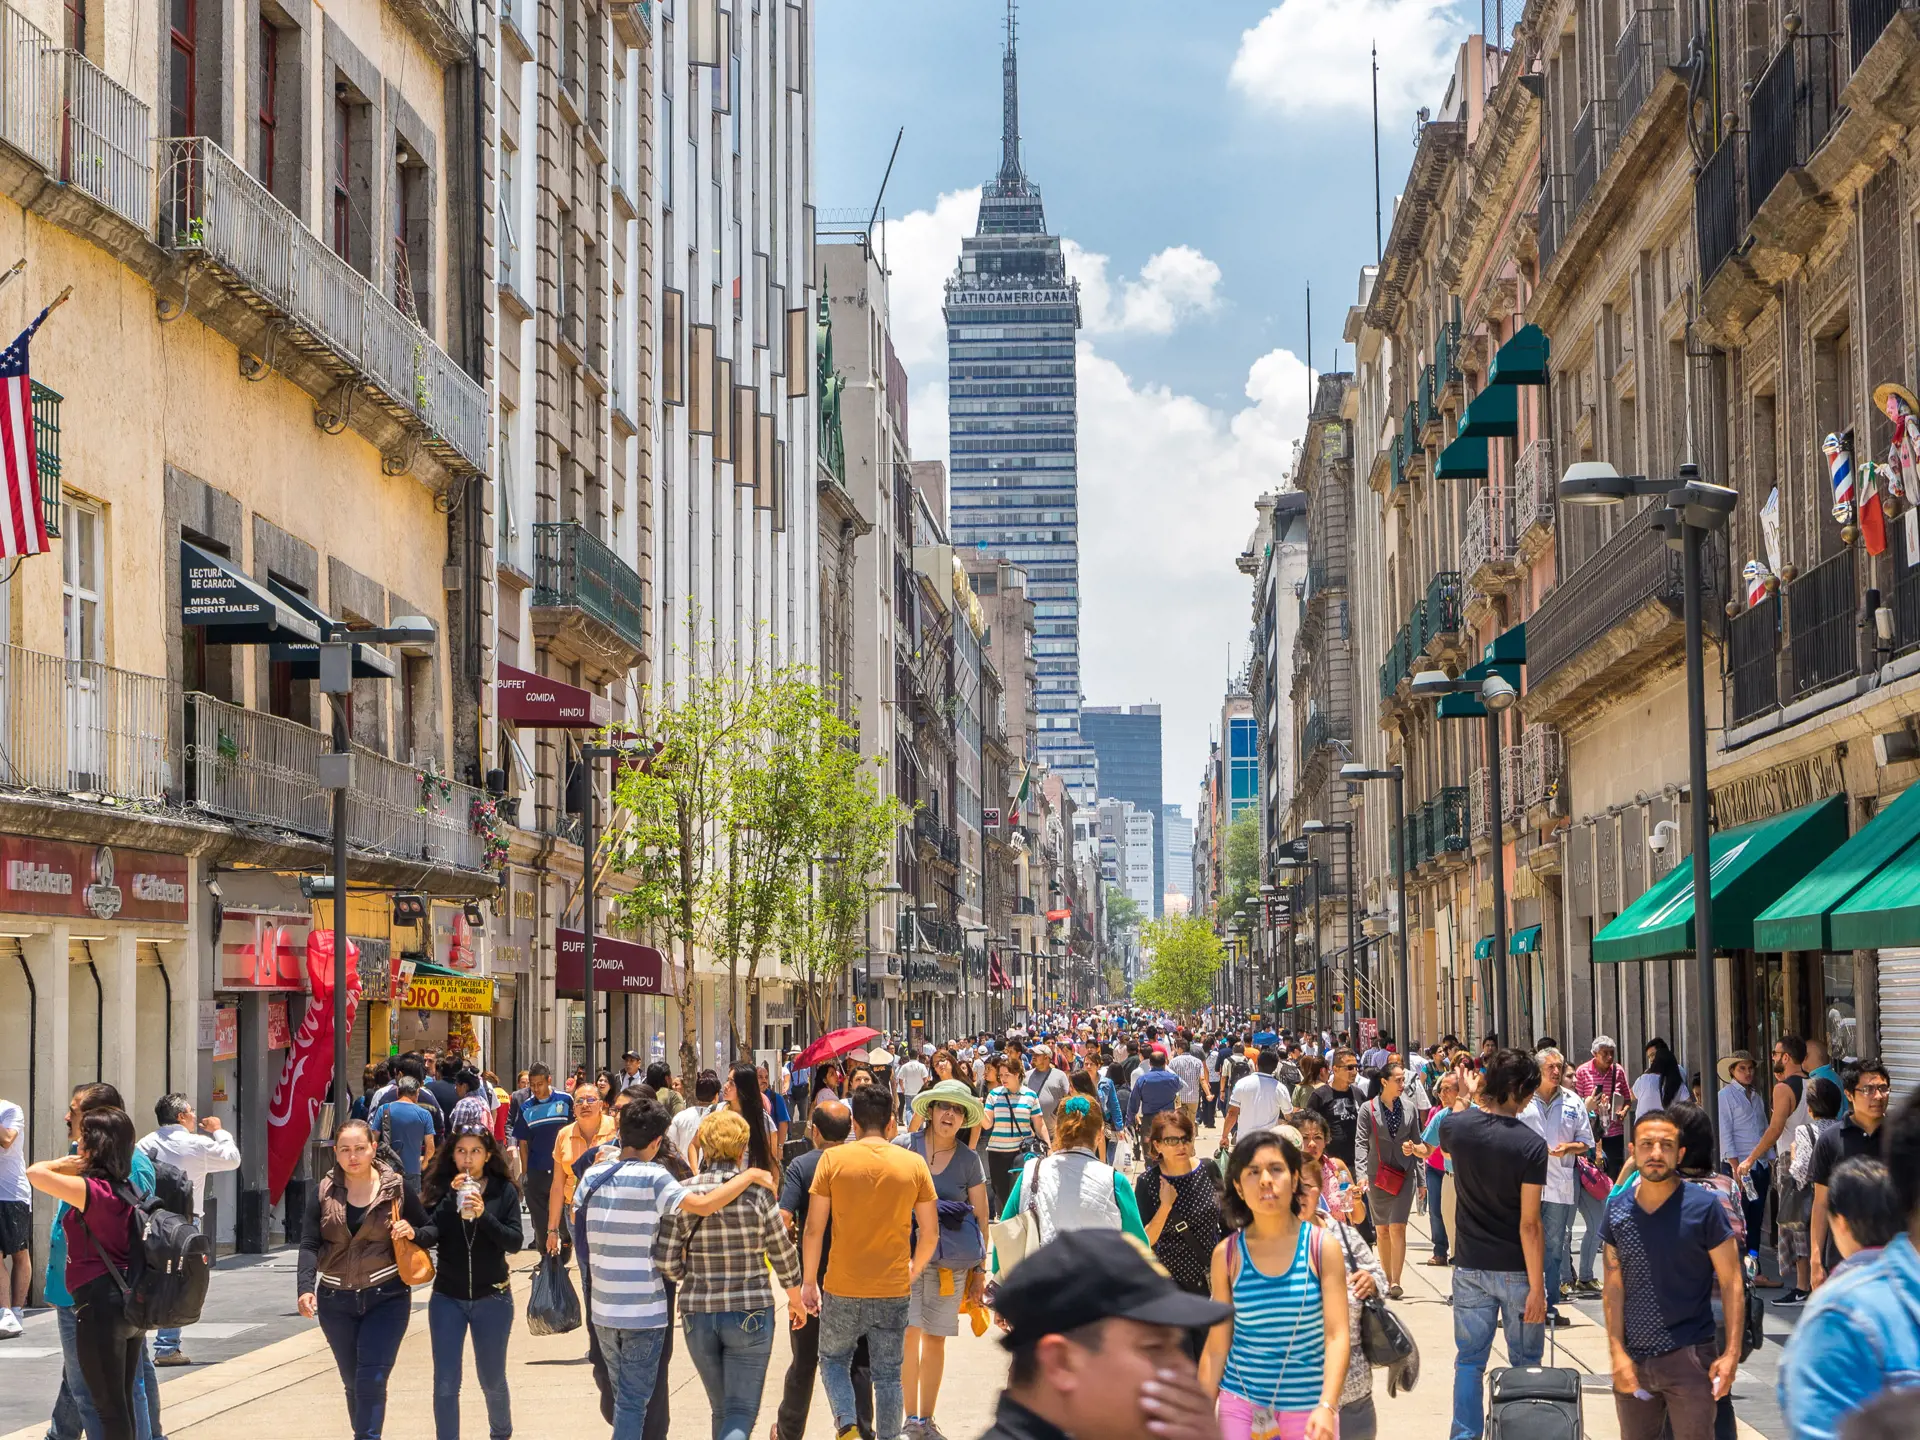 MEXICO CITY - Mexico City er en levende og spændende by, som I oplever på rejsens første dage.